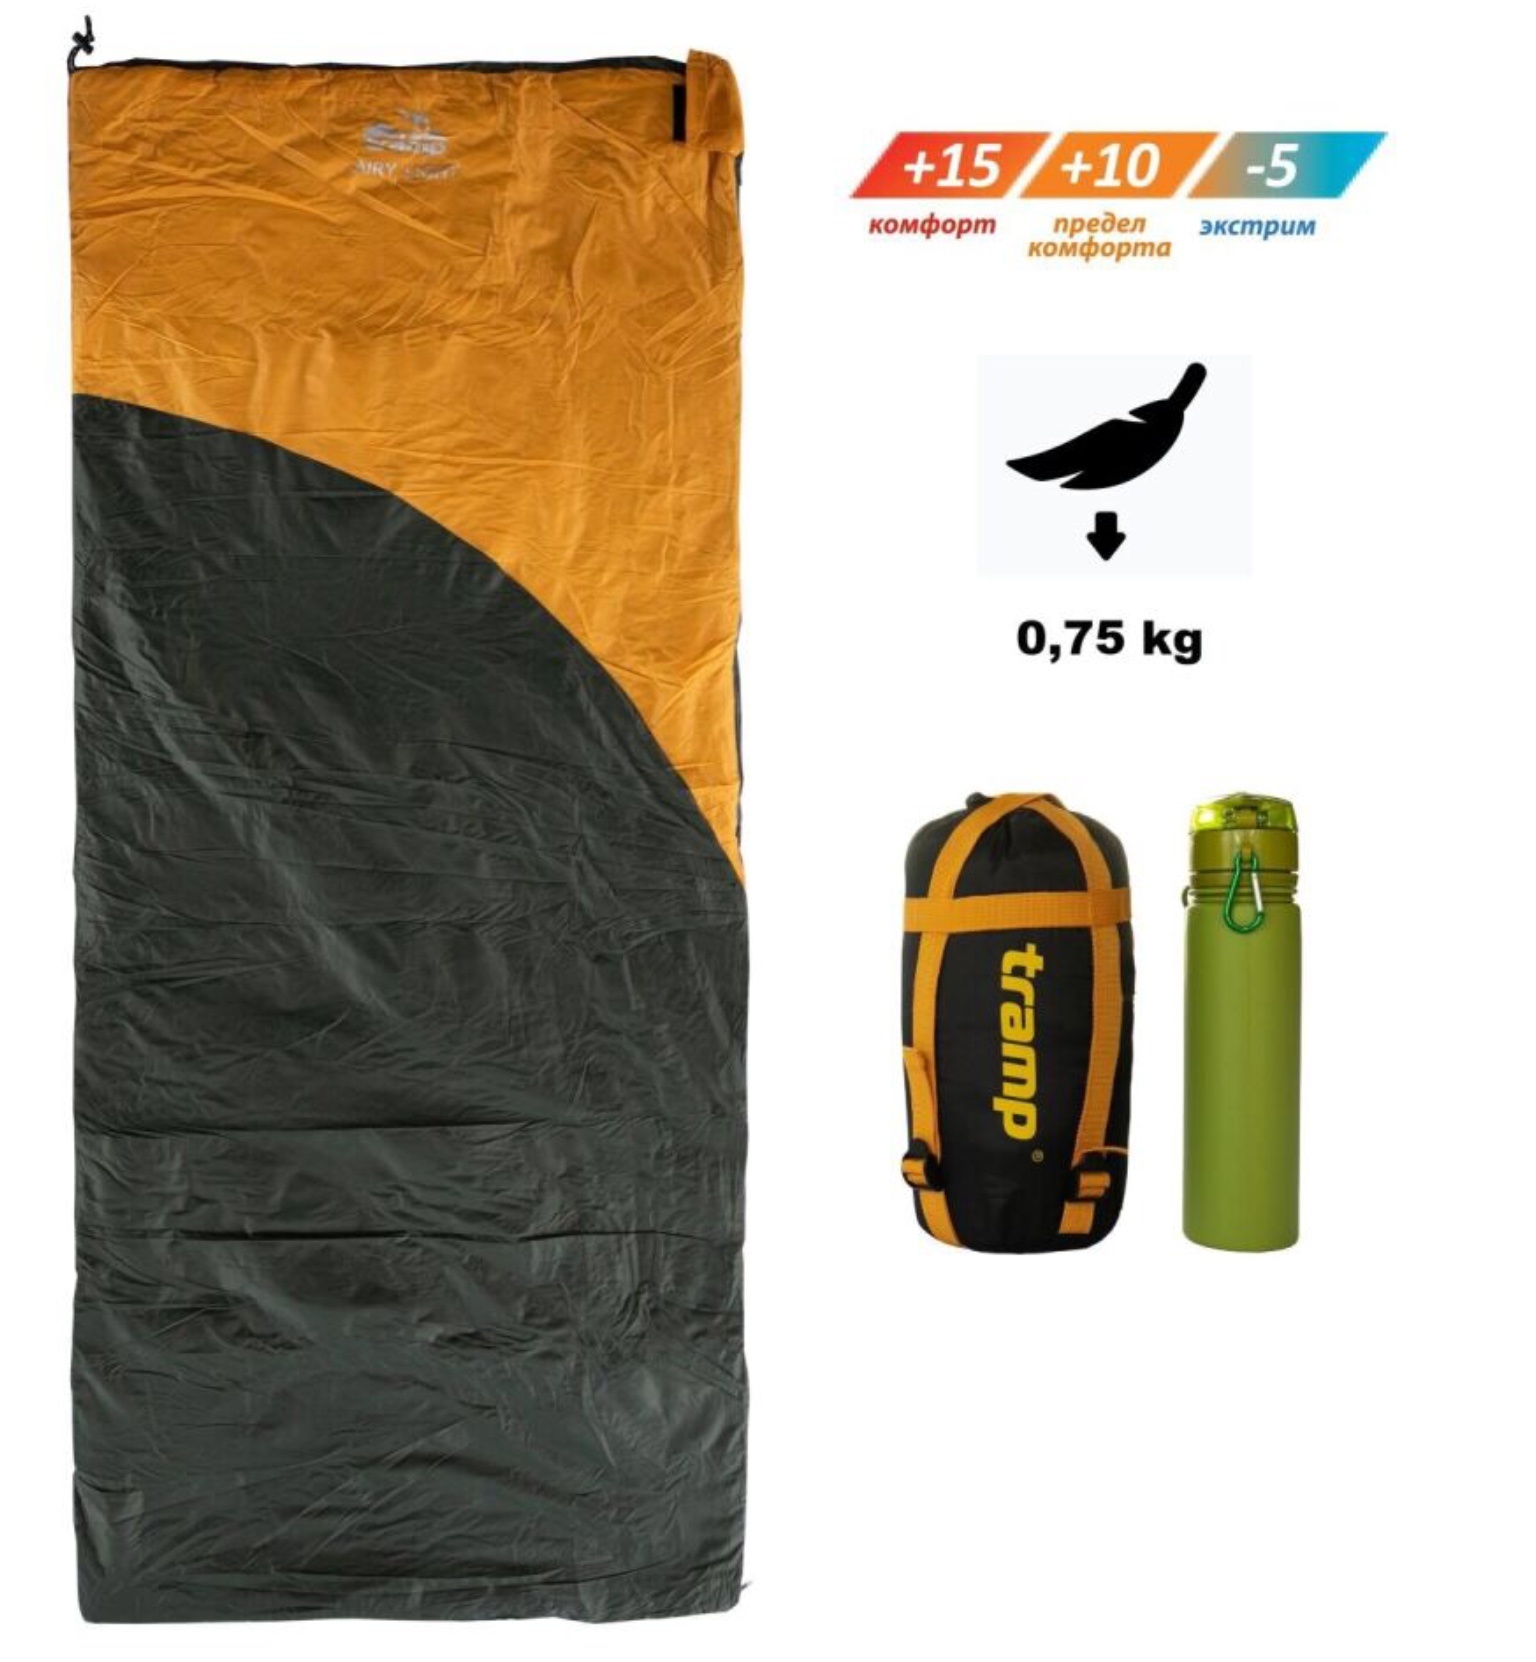 Спальный мешок одеяло Tramp Airy Light Regular 190*80 см (-5°C) - фото